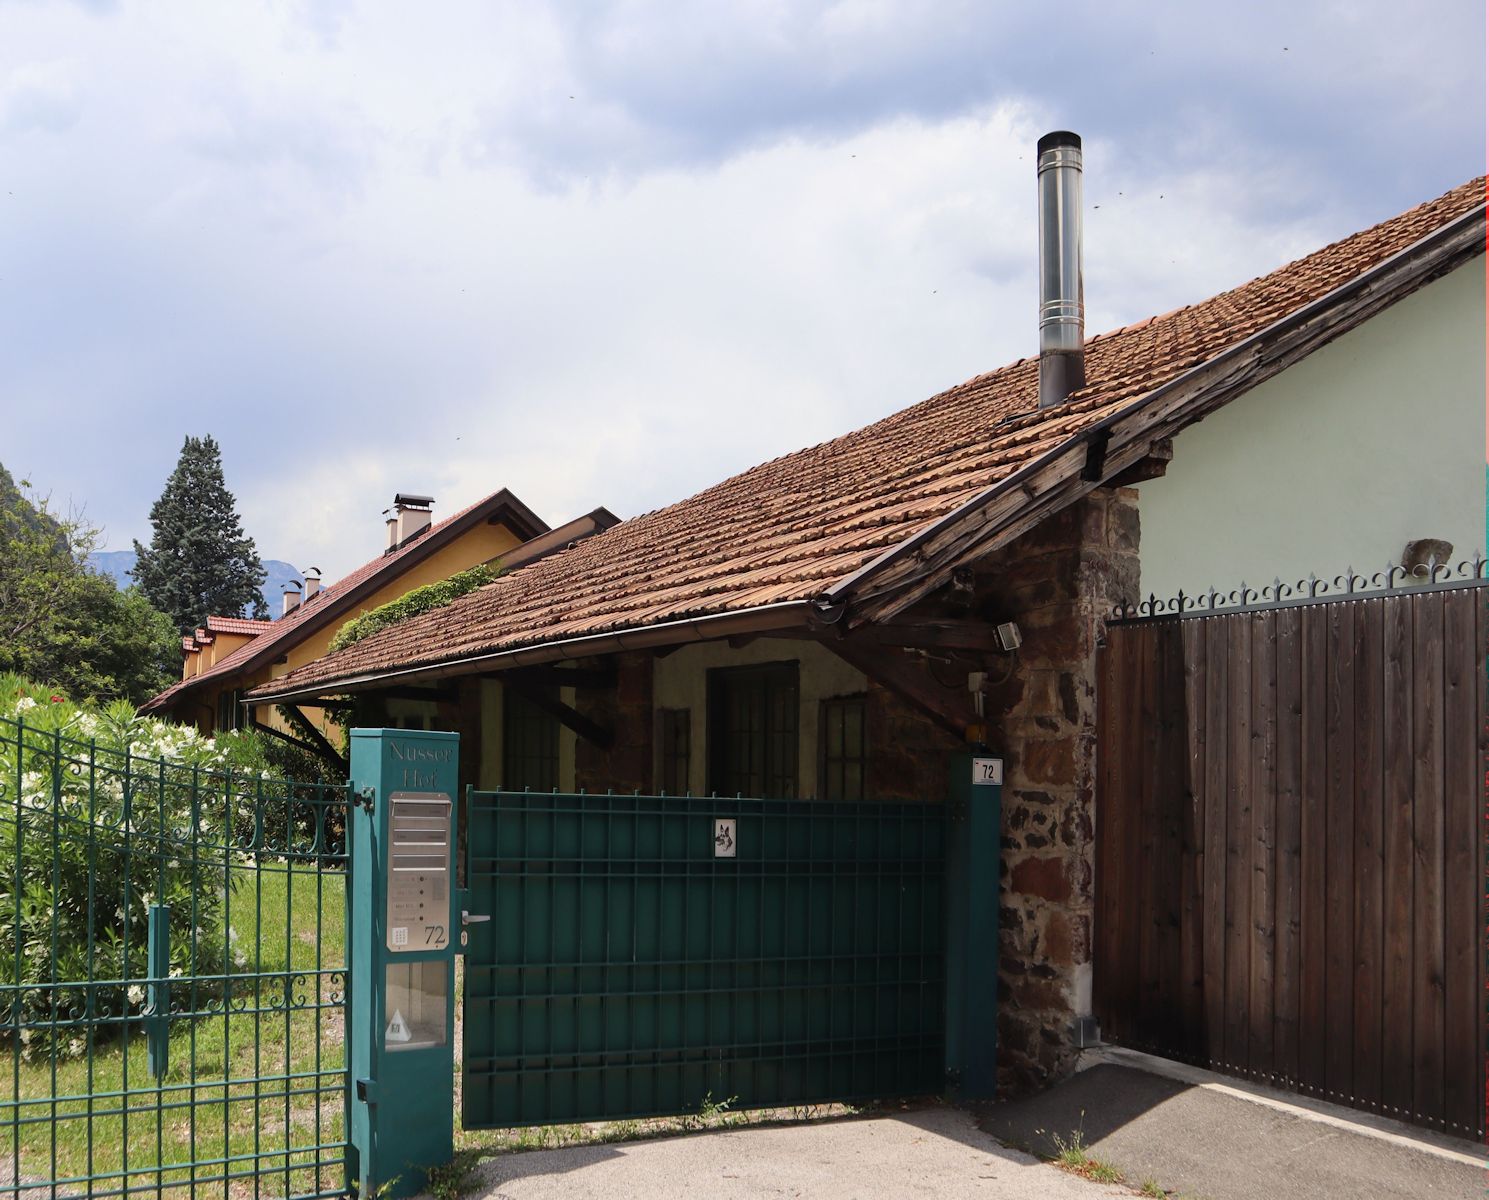 Josef Mayr-Nussers Geburtshaus, das Weingut vNusserhof” in Bozen